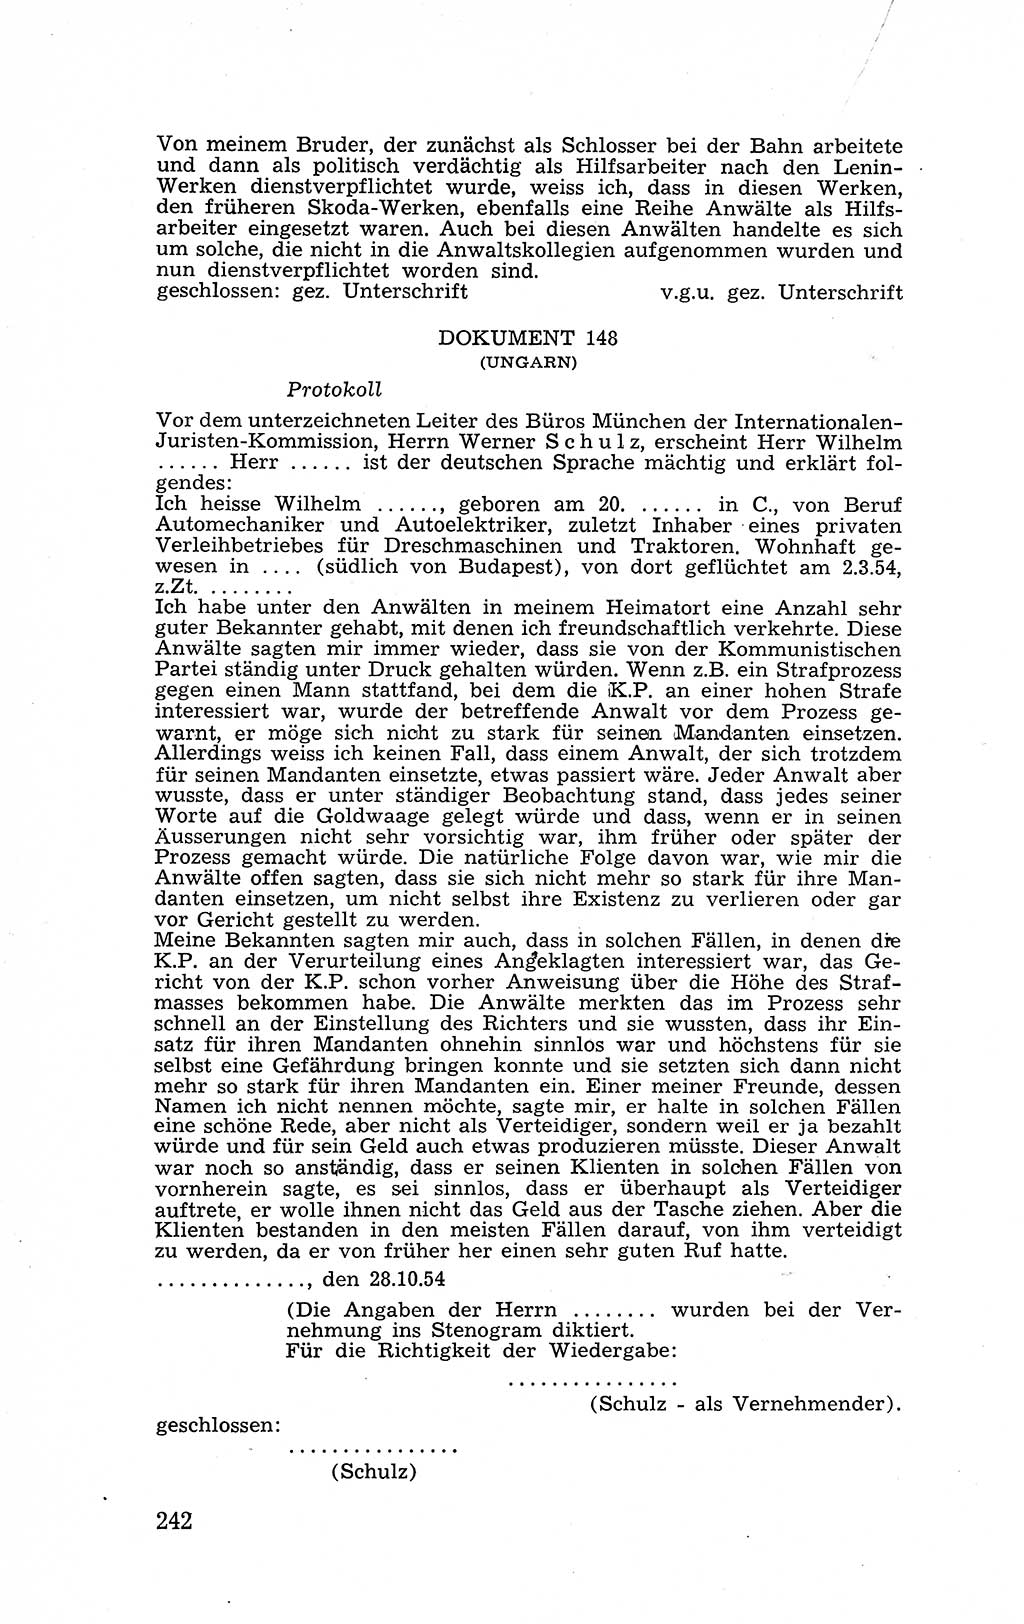 Recht in Fesseln, Dokumente, Internationale Juristen-Kommission [Bundesrepublik Deutschland (BRD)] 1955, Seite 242 (R. Dok. IJK BRD 1955, S. 242)